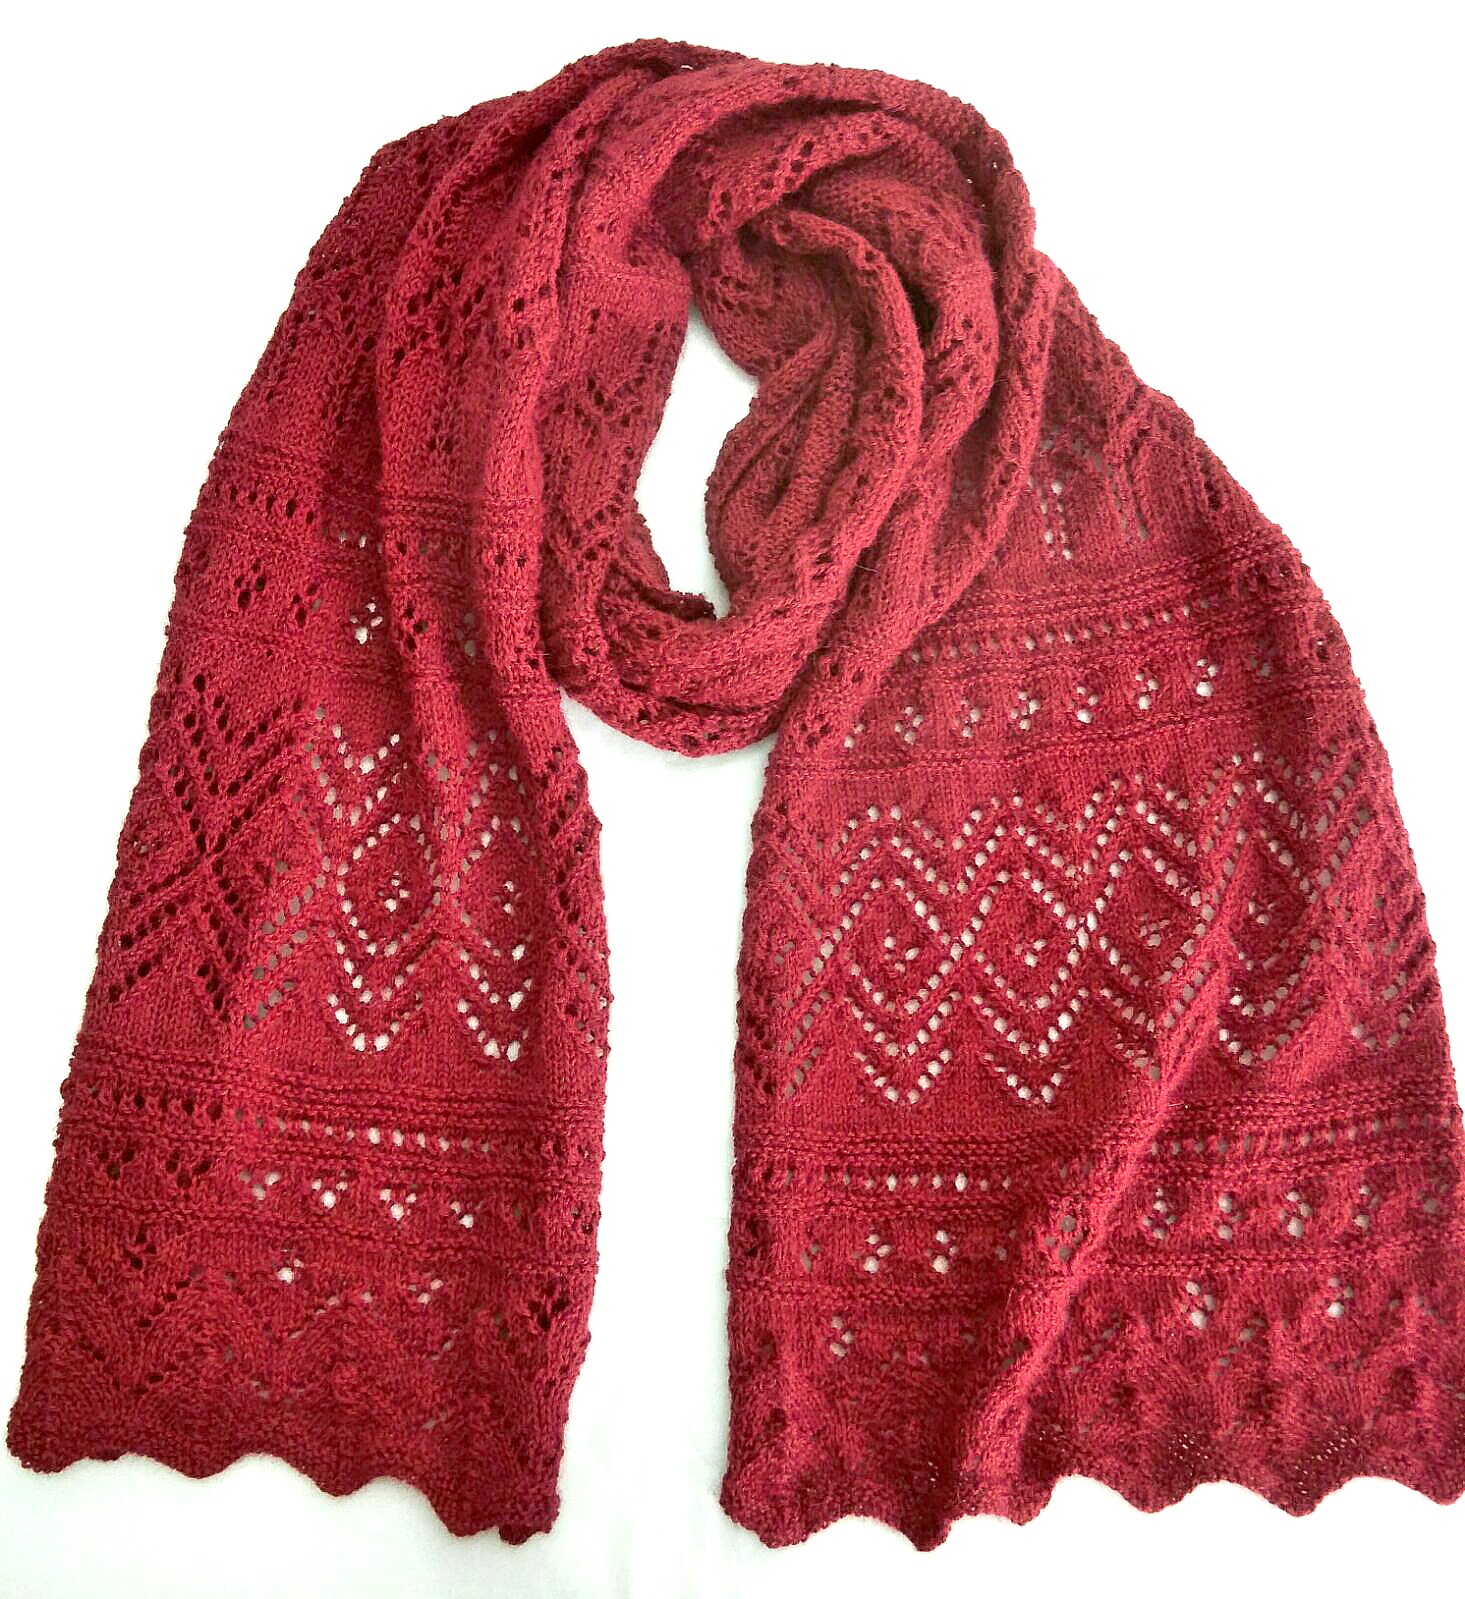 Experimentar secretamente es suficiente Bufanda Calada - Idea para tejer una bufanda calada con lana de alpaca